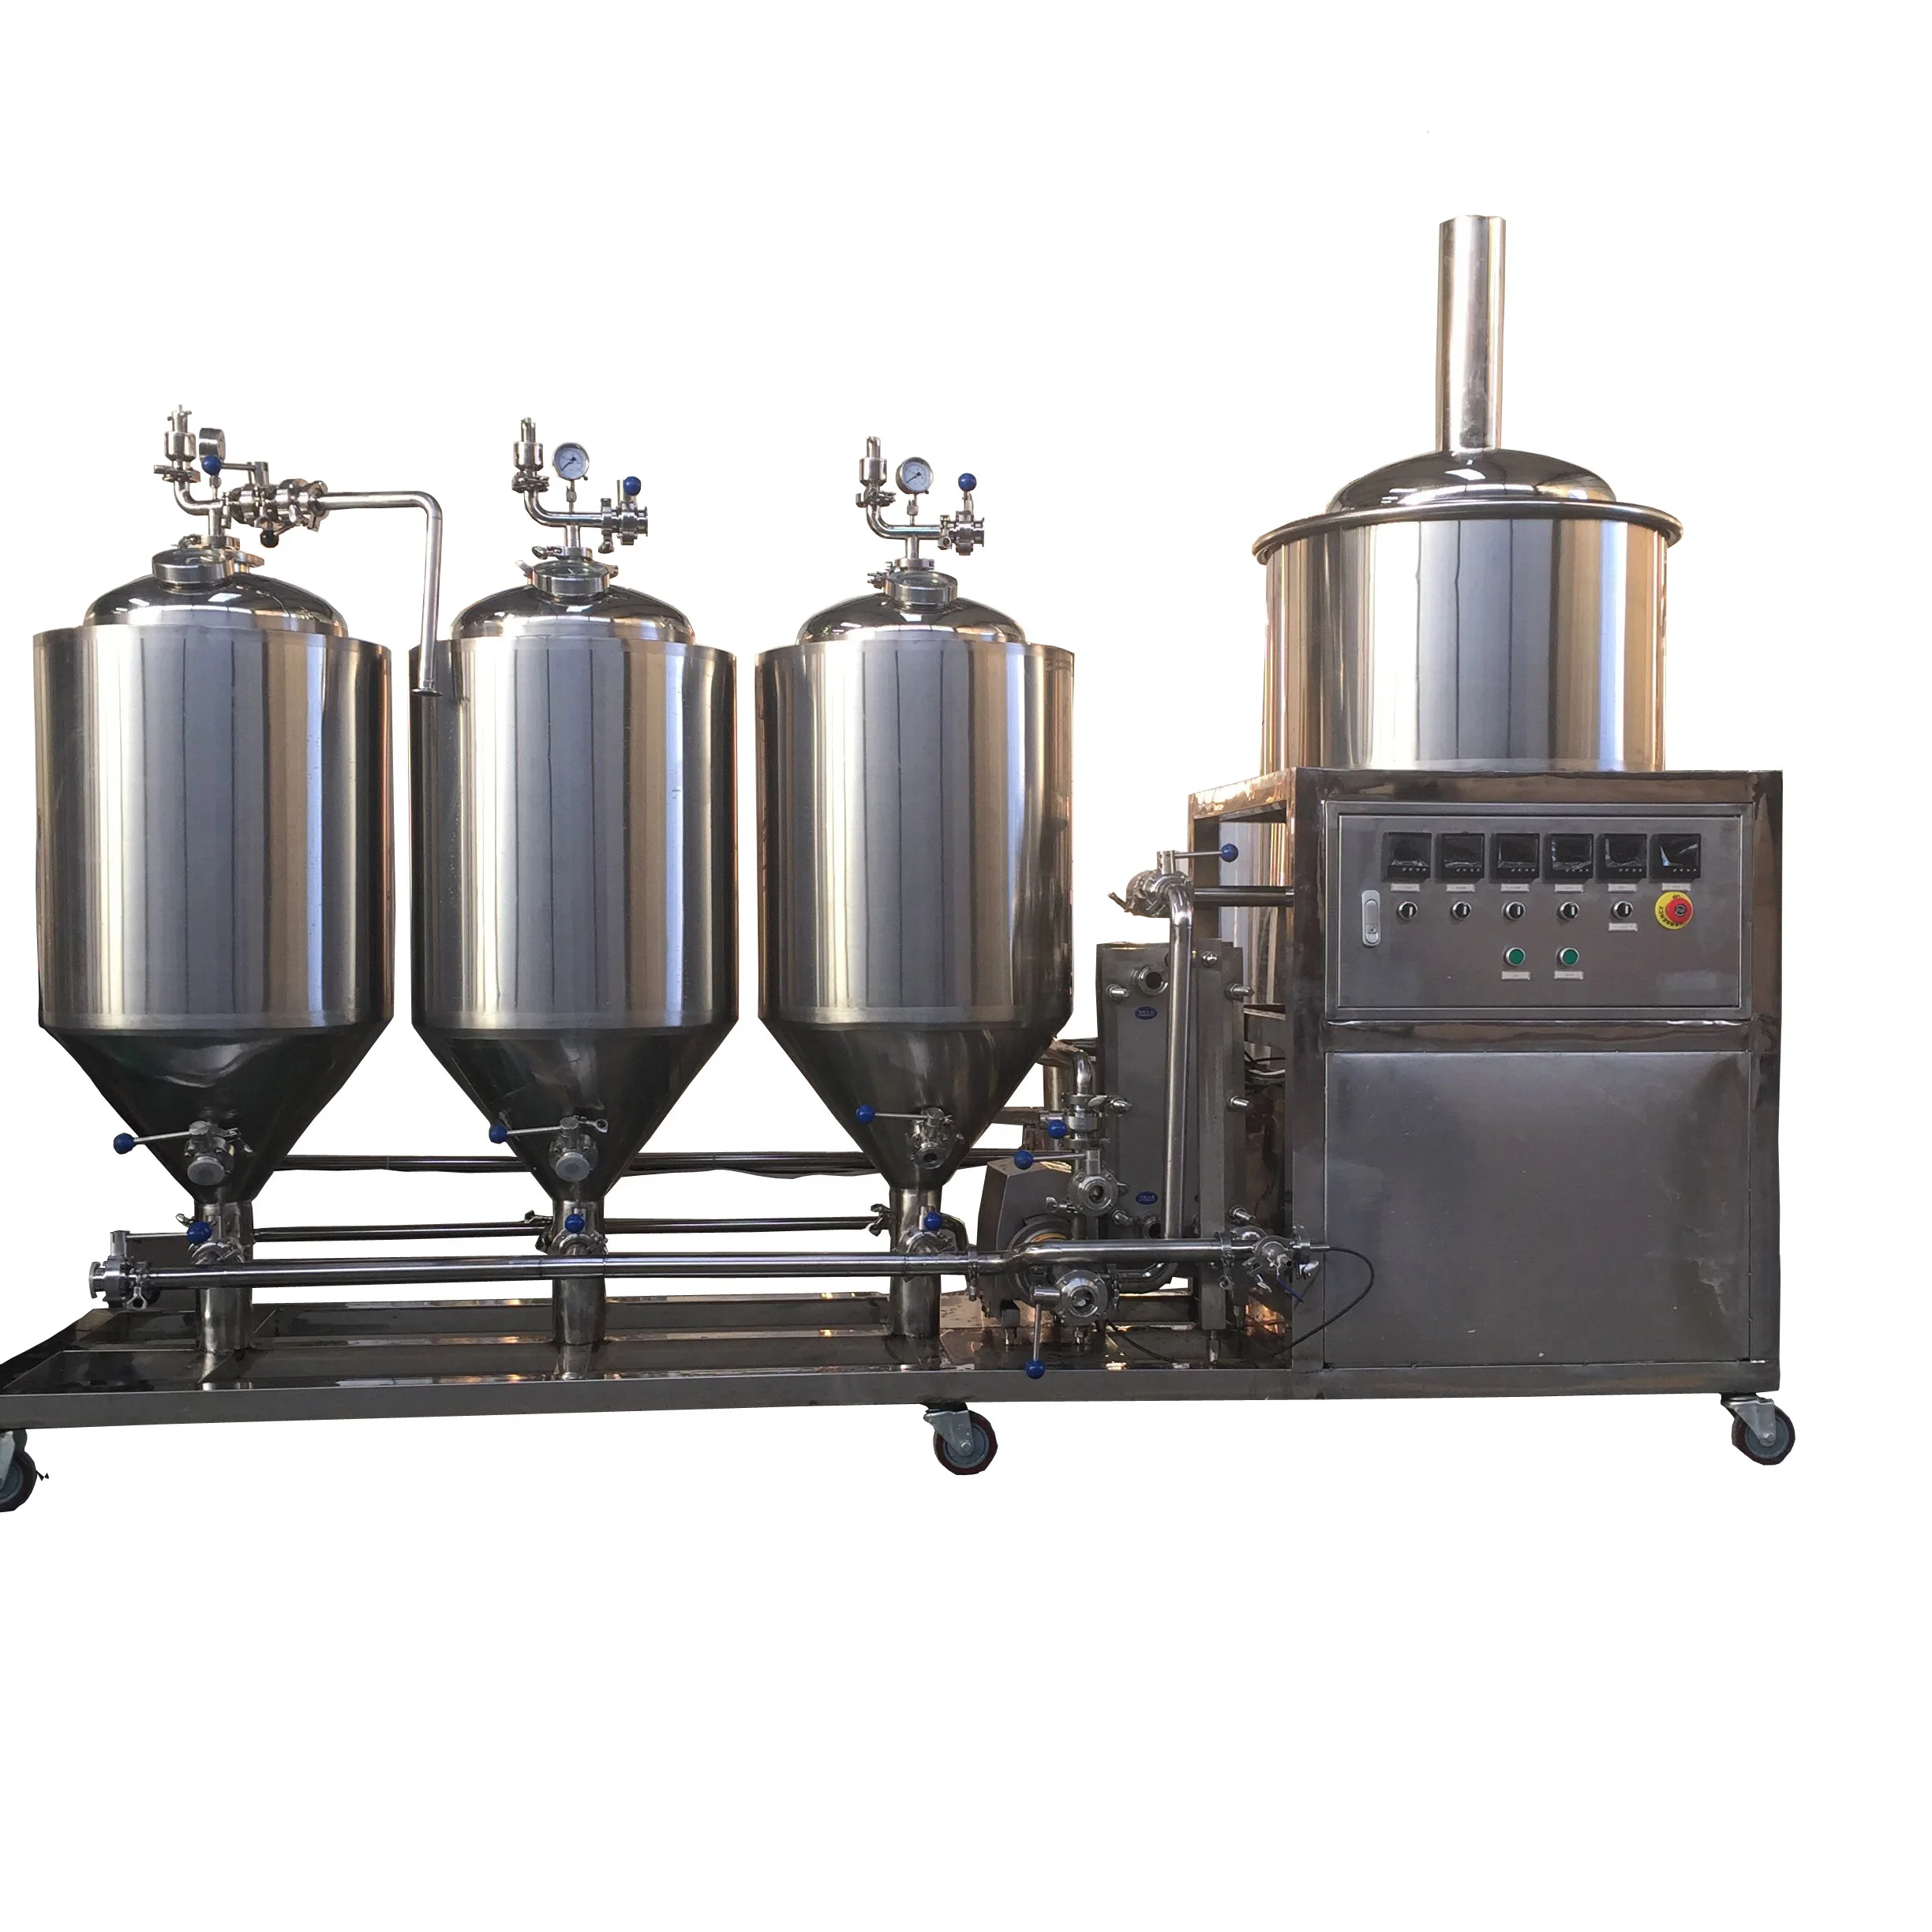 机械设备  食品饮料机械  饮料酒水加工机械  发酵设备  1 啤酒厂